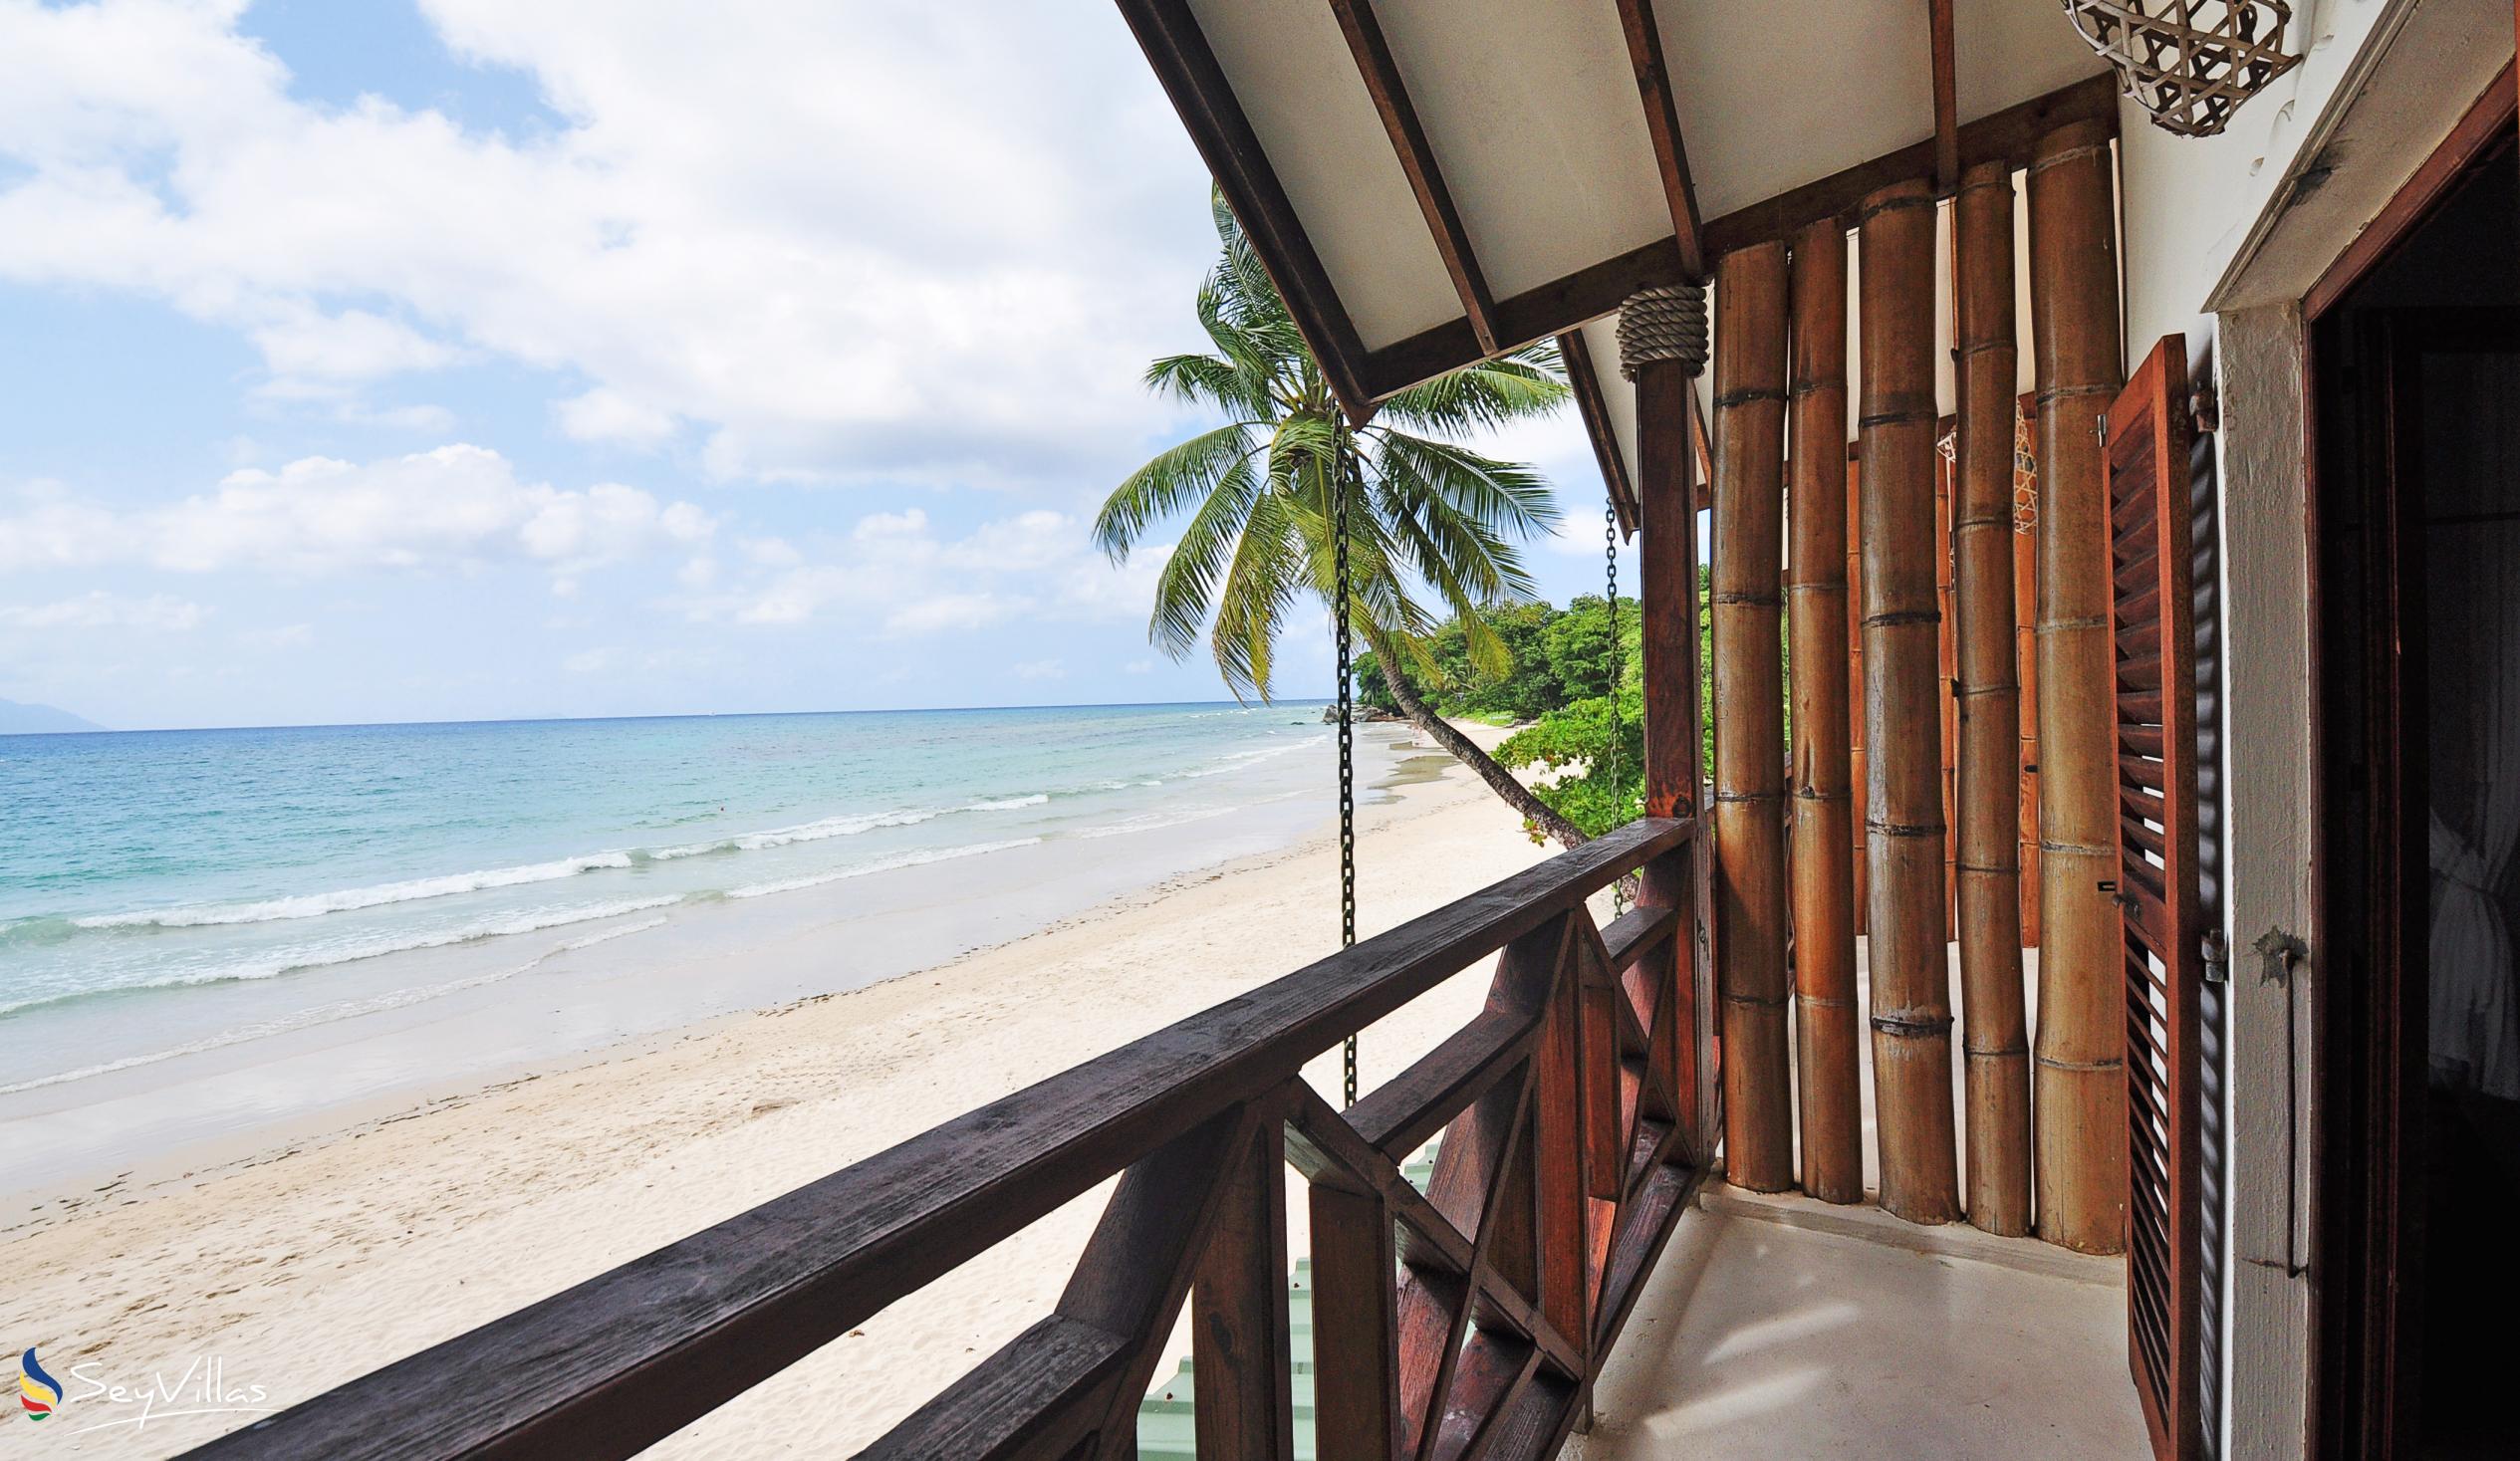 Foto 14: Clef des Iles - Appartamento sulla spiaggia con 2 camere da letto - Mahé (Seychelles)